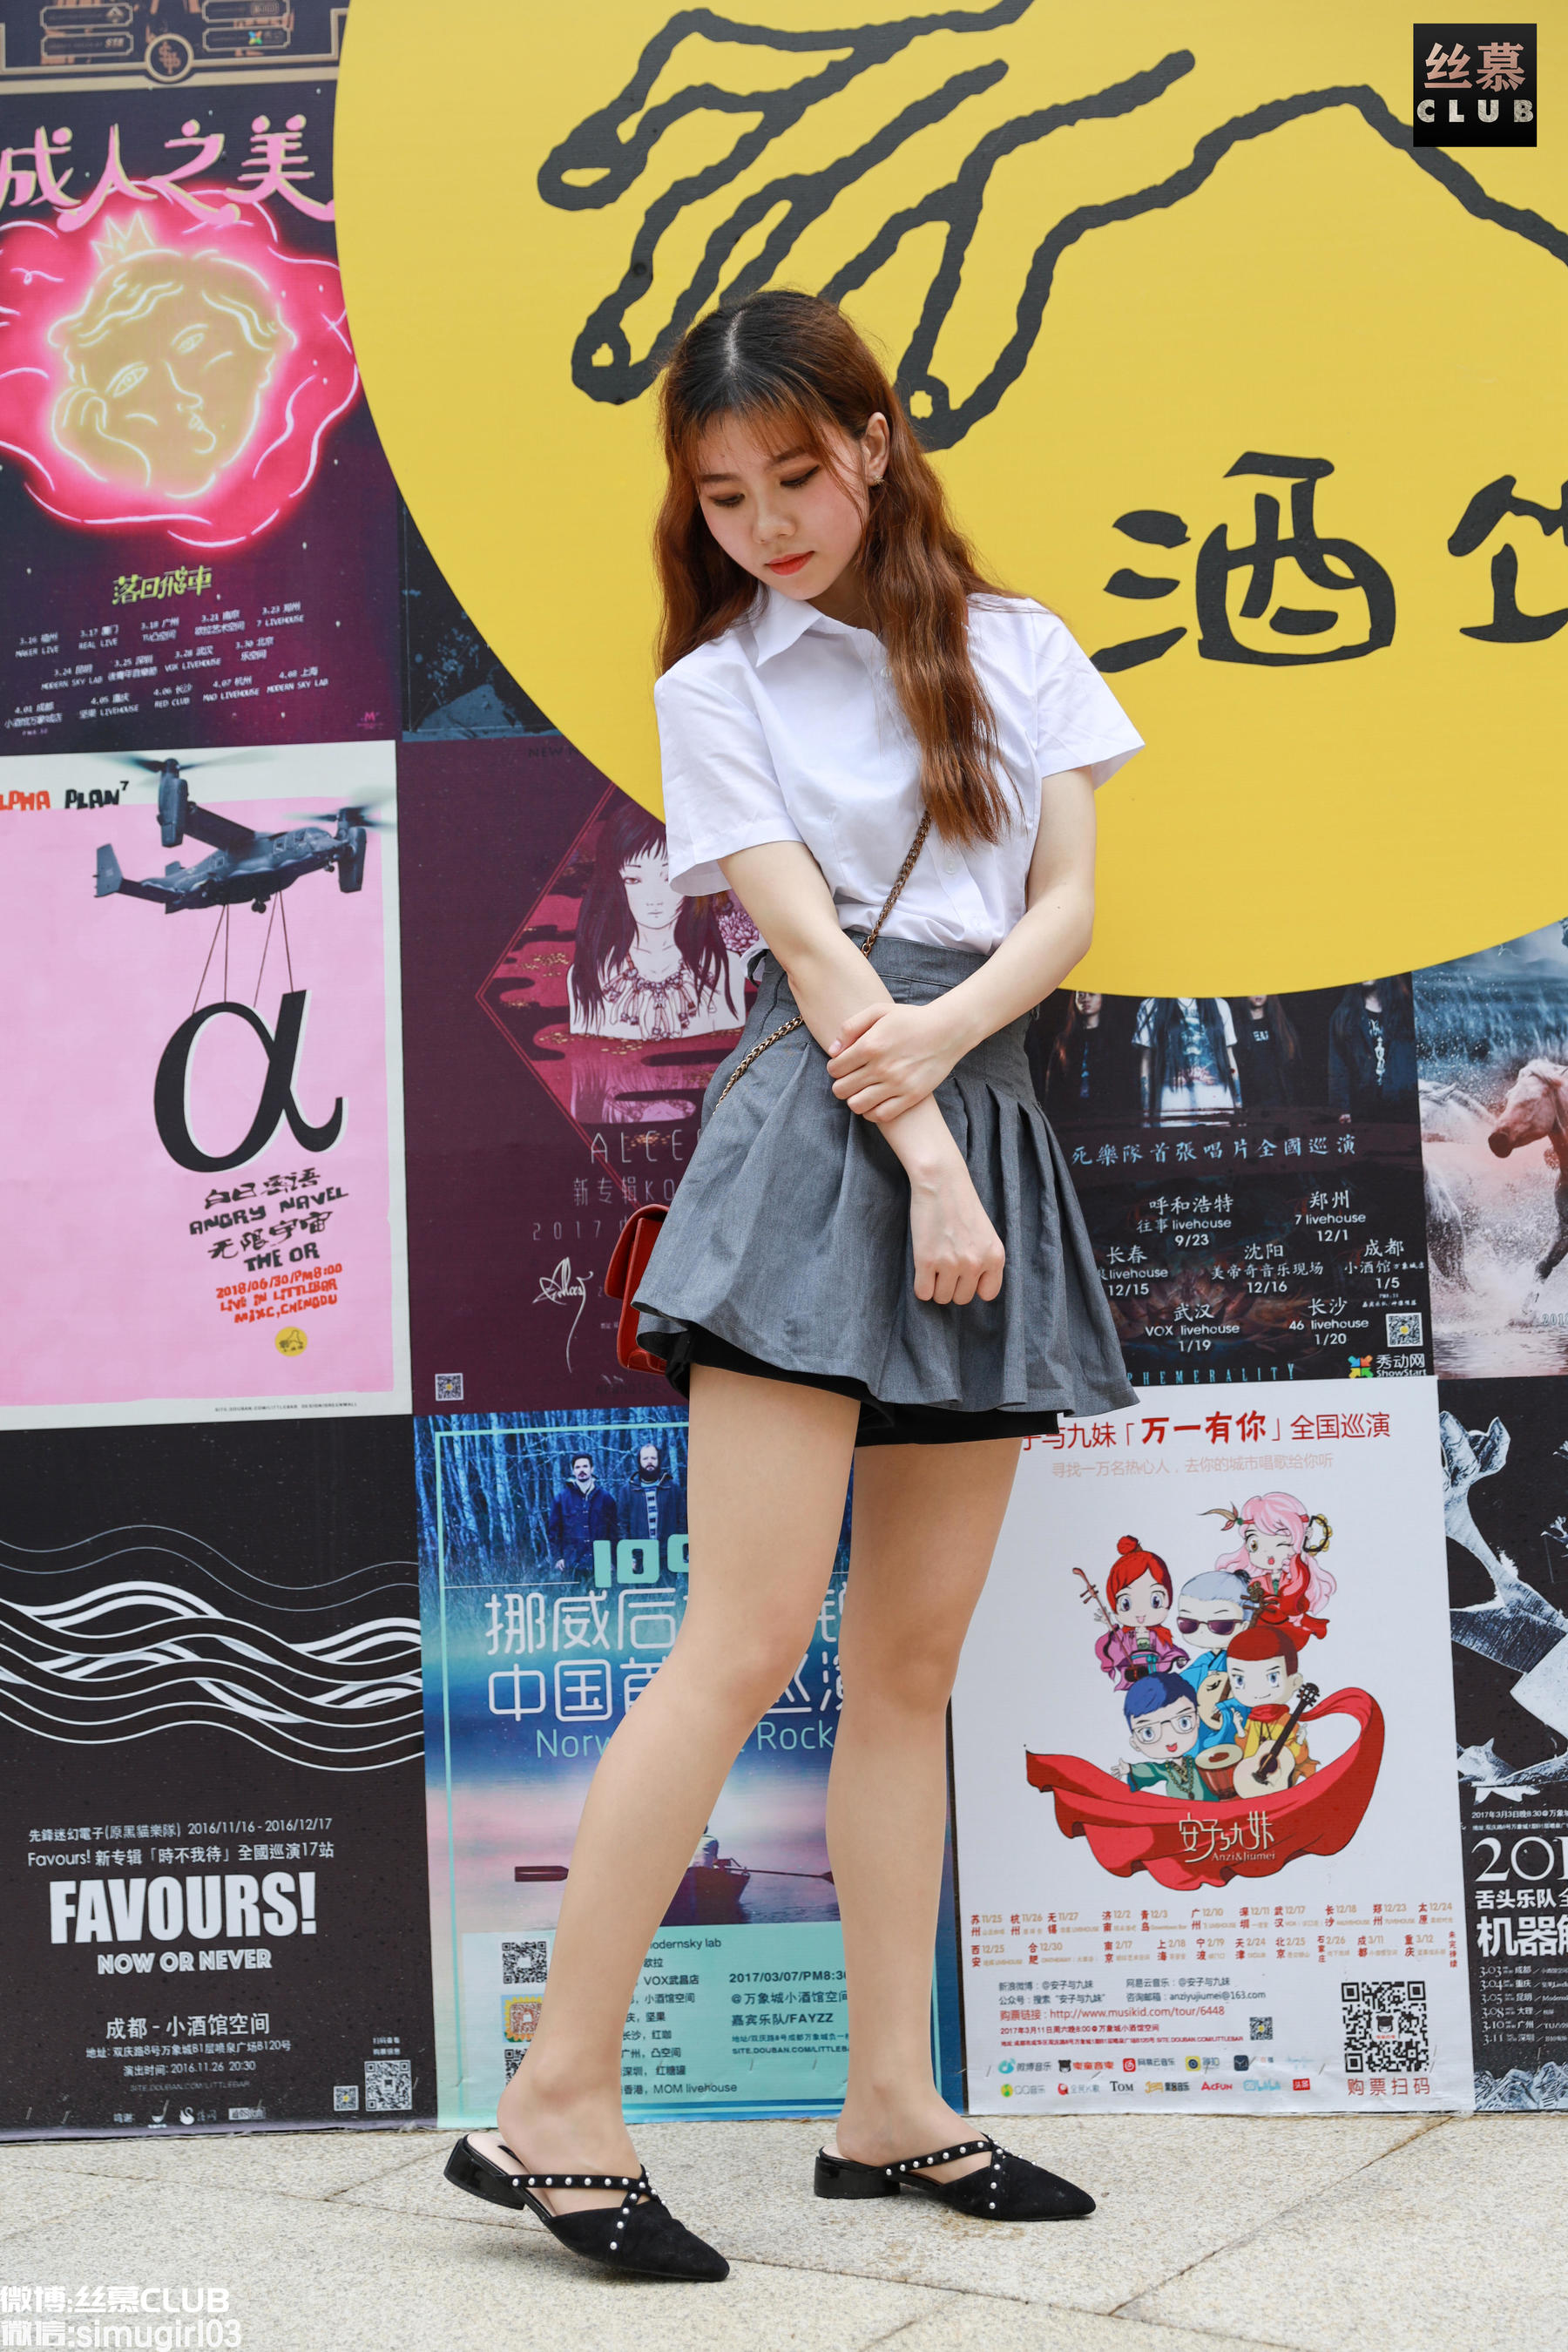 [Simu] SM035 Tian Tianyiyuan Junior School Girl "Cute School Girl Going to the Mall" Page 31 No.576343